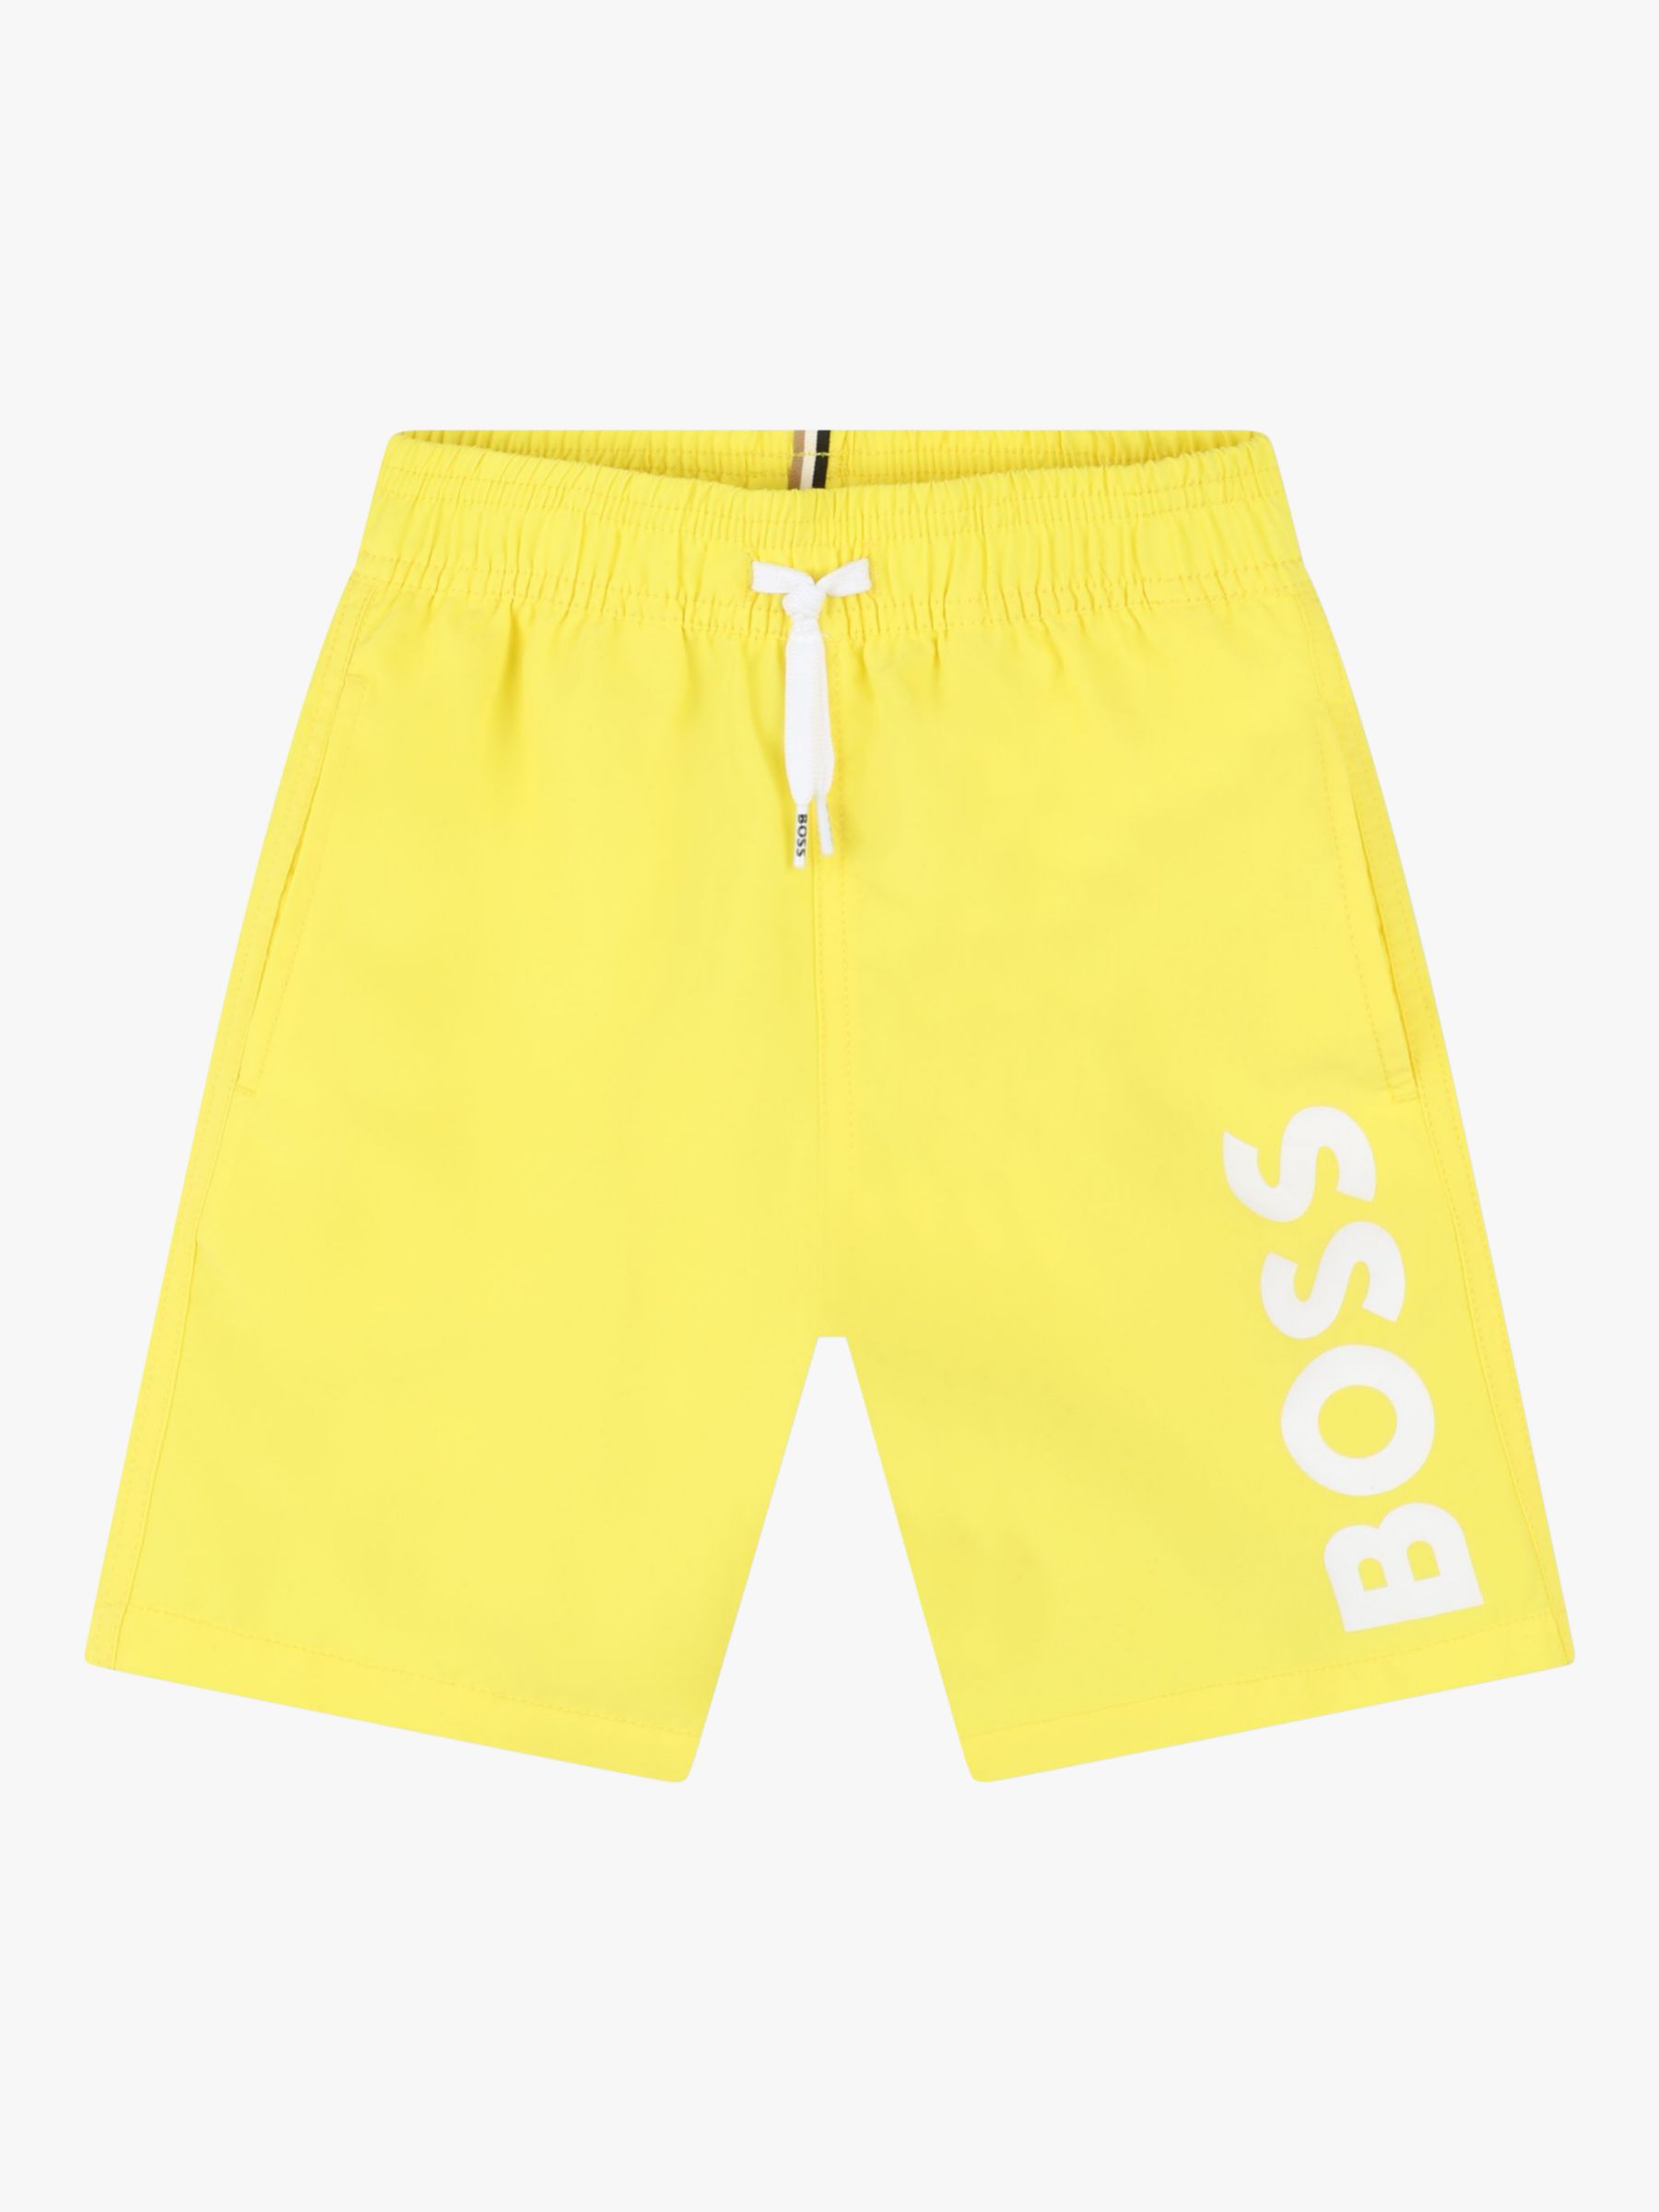 BOSS Kids' Surfer Swim Shorts, Yellow, 4 years